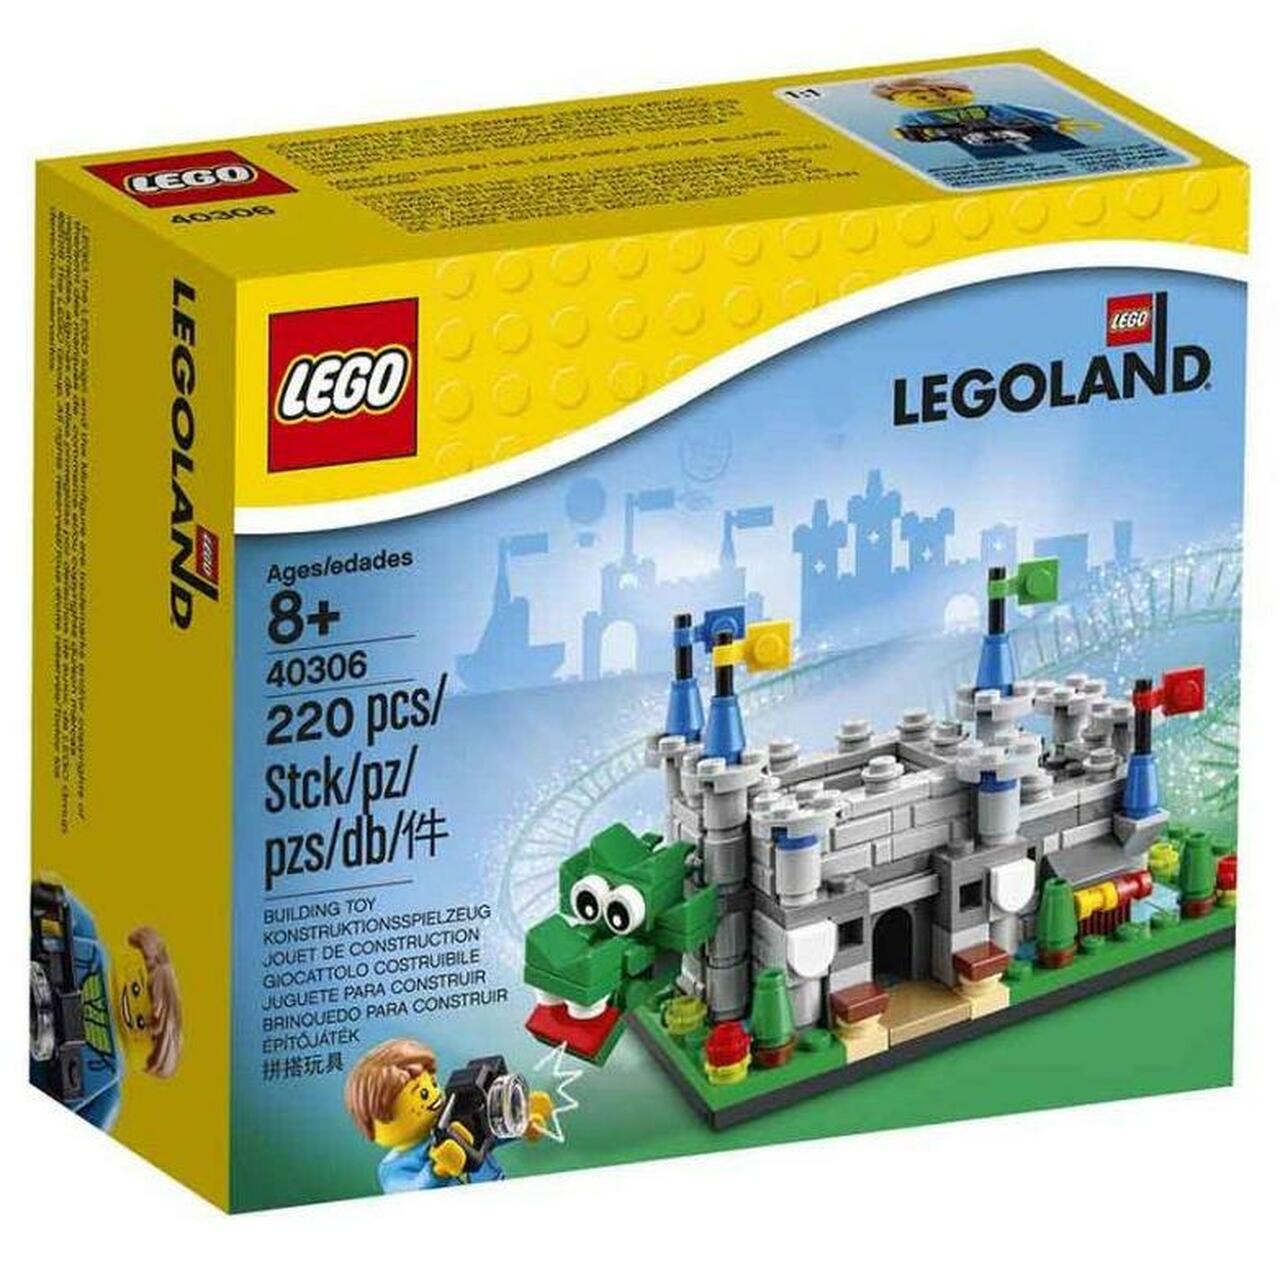 New LEGOLAND-exclusive 40710 Legoland Pirate Splash Battle revealed!12